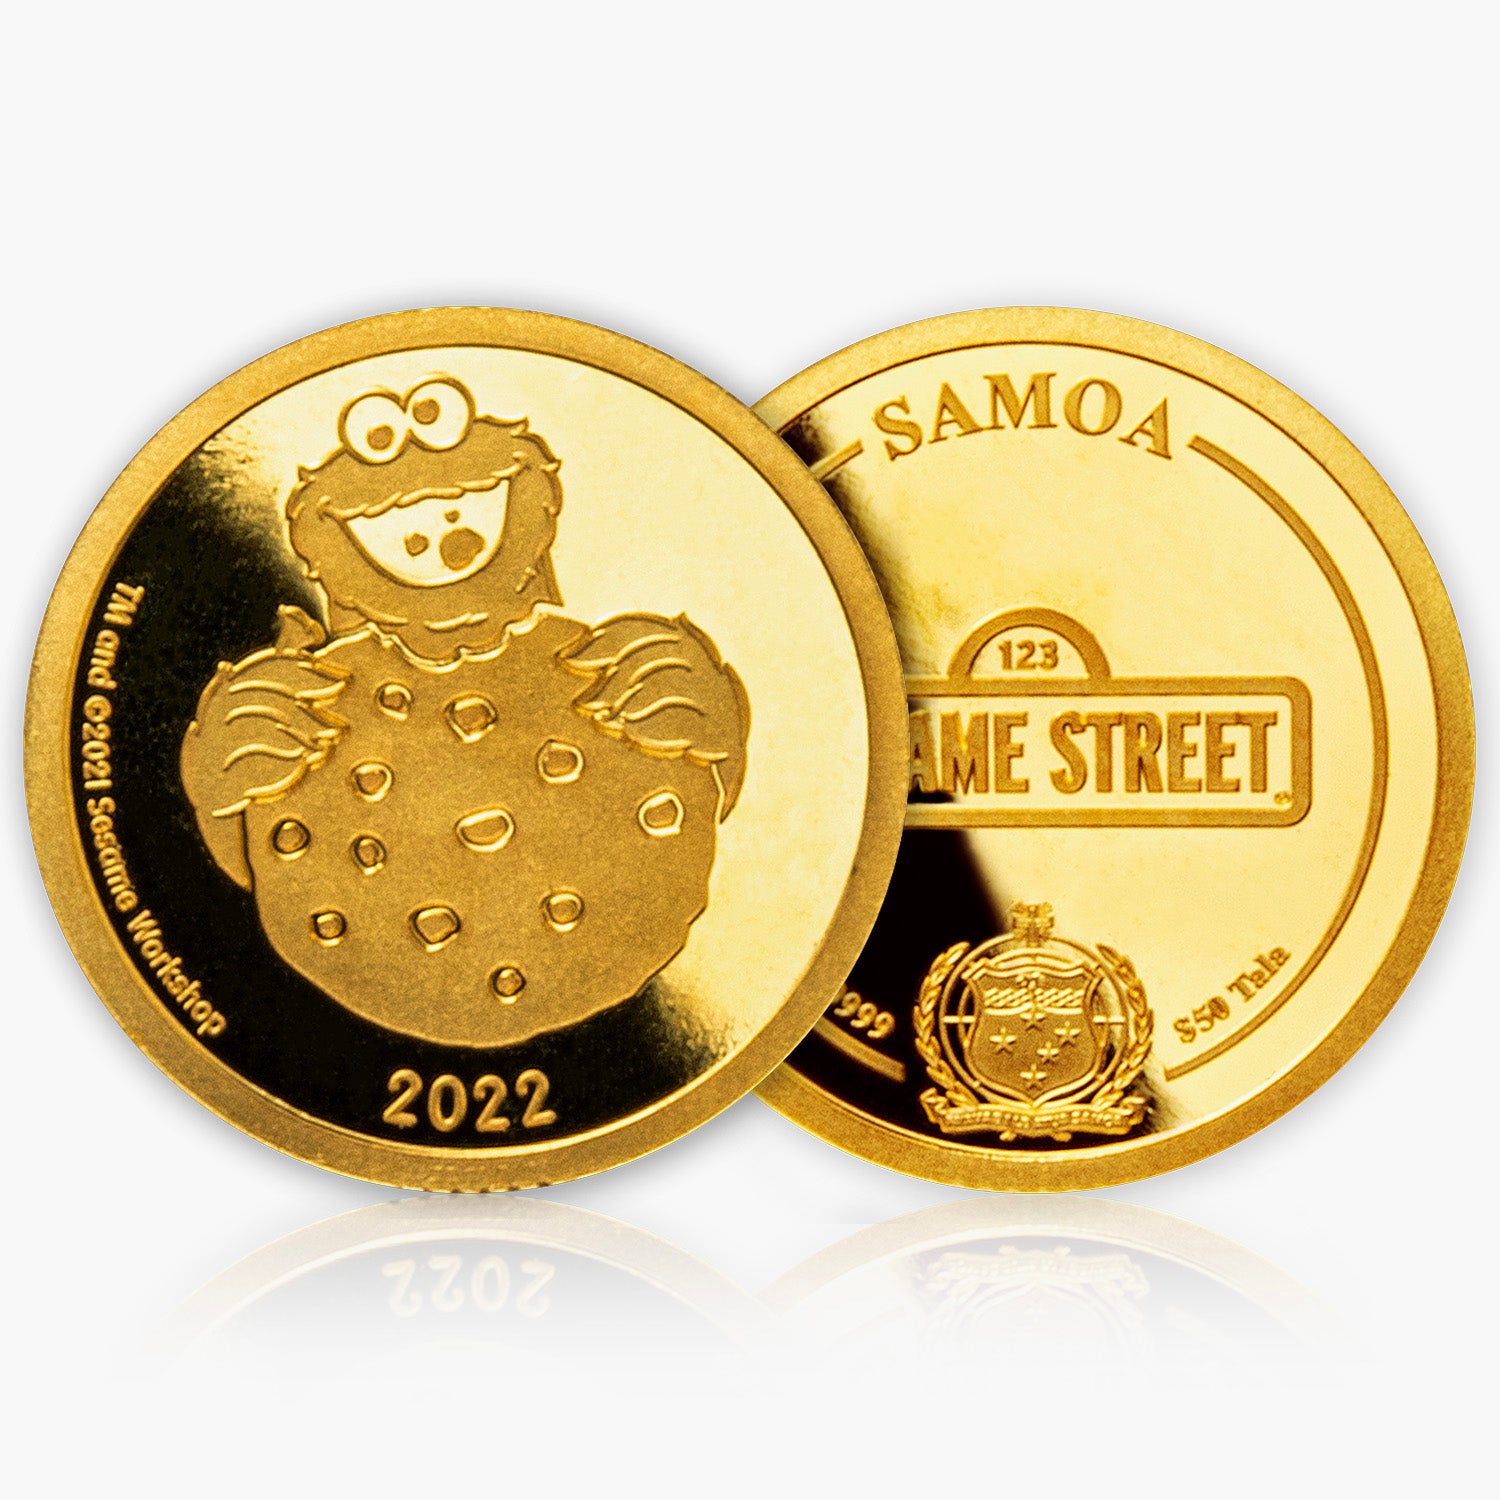 セサミストリート クッキーモンスター 0.5g ゴールドコイン